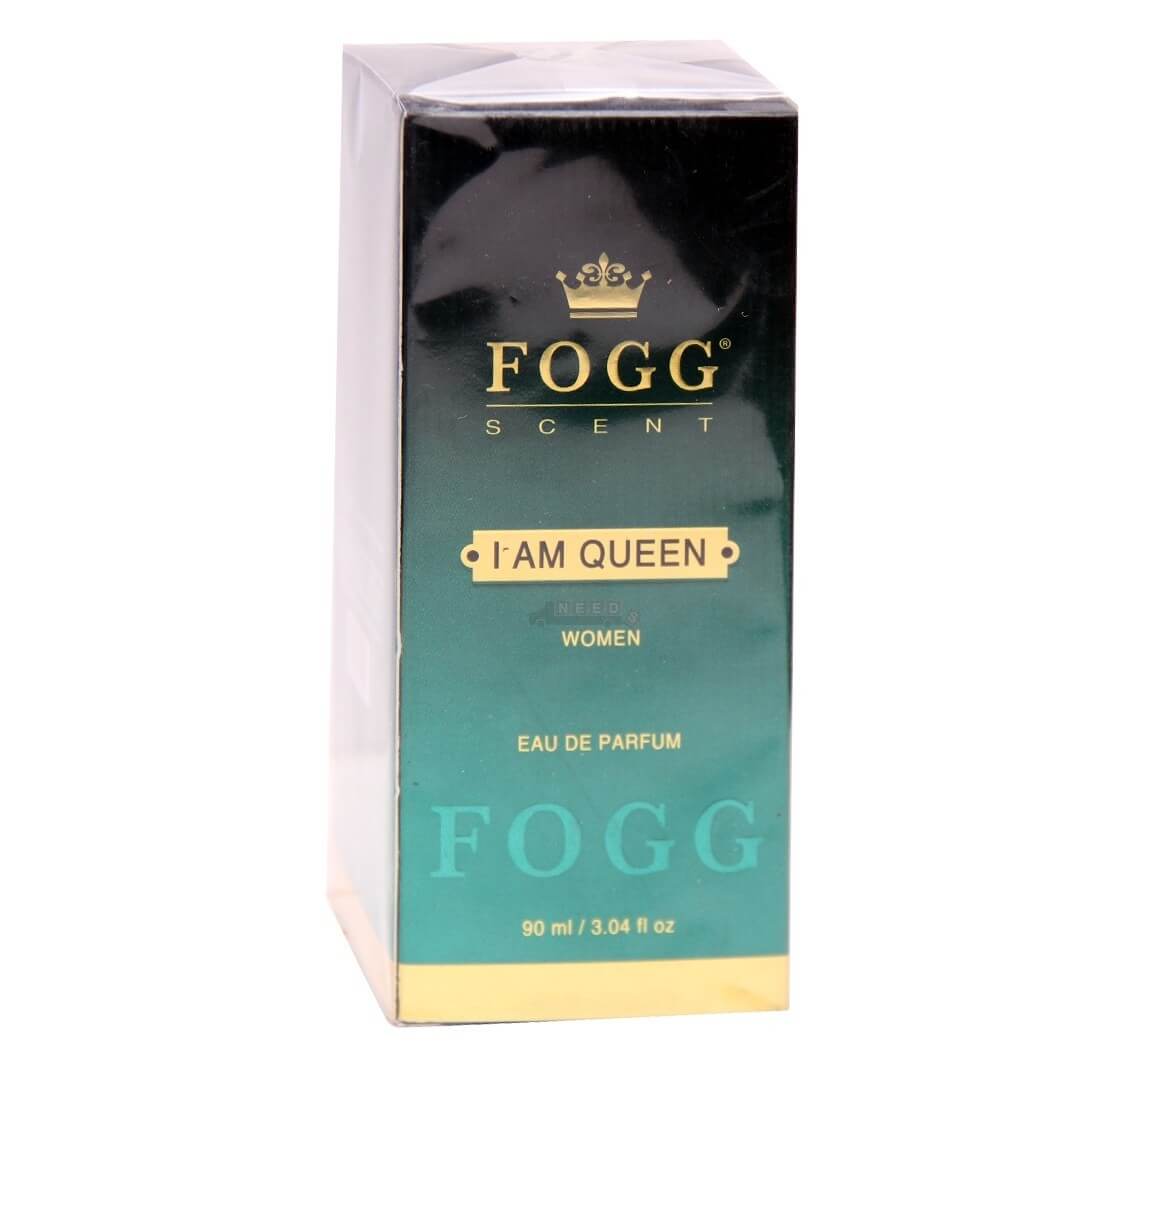 fogg i am queen scent for women VizagShop.com